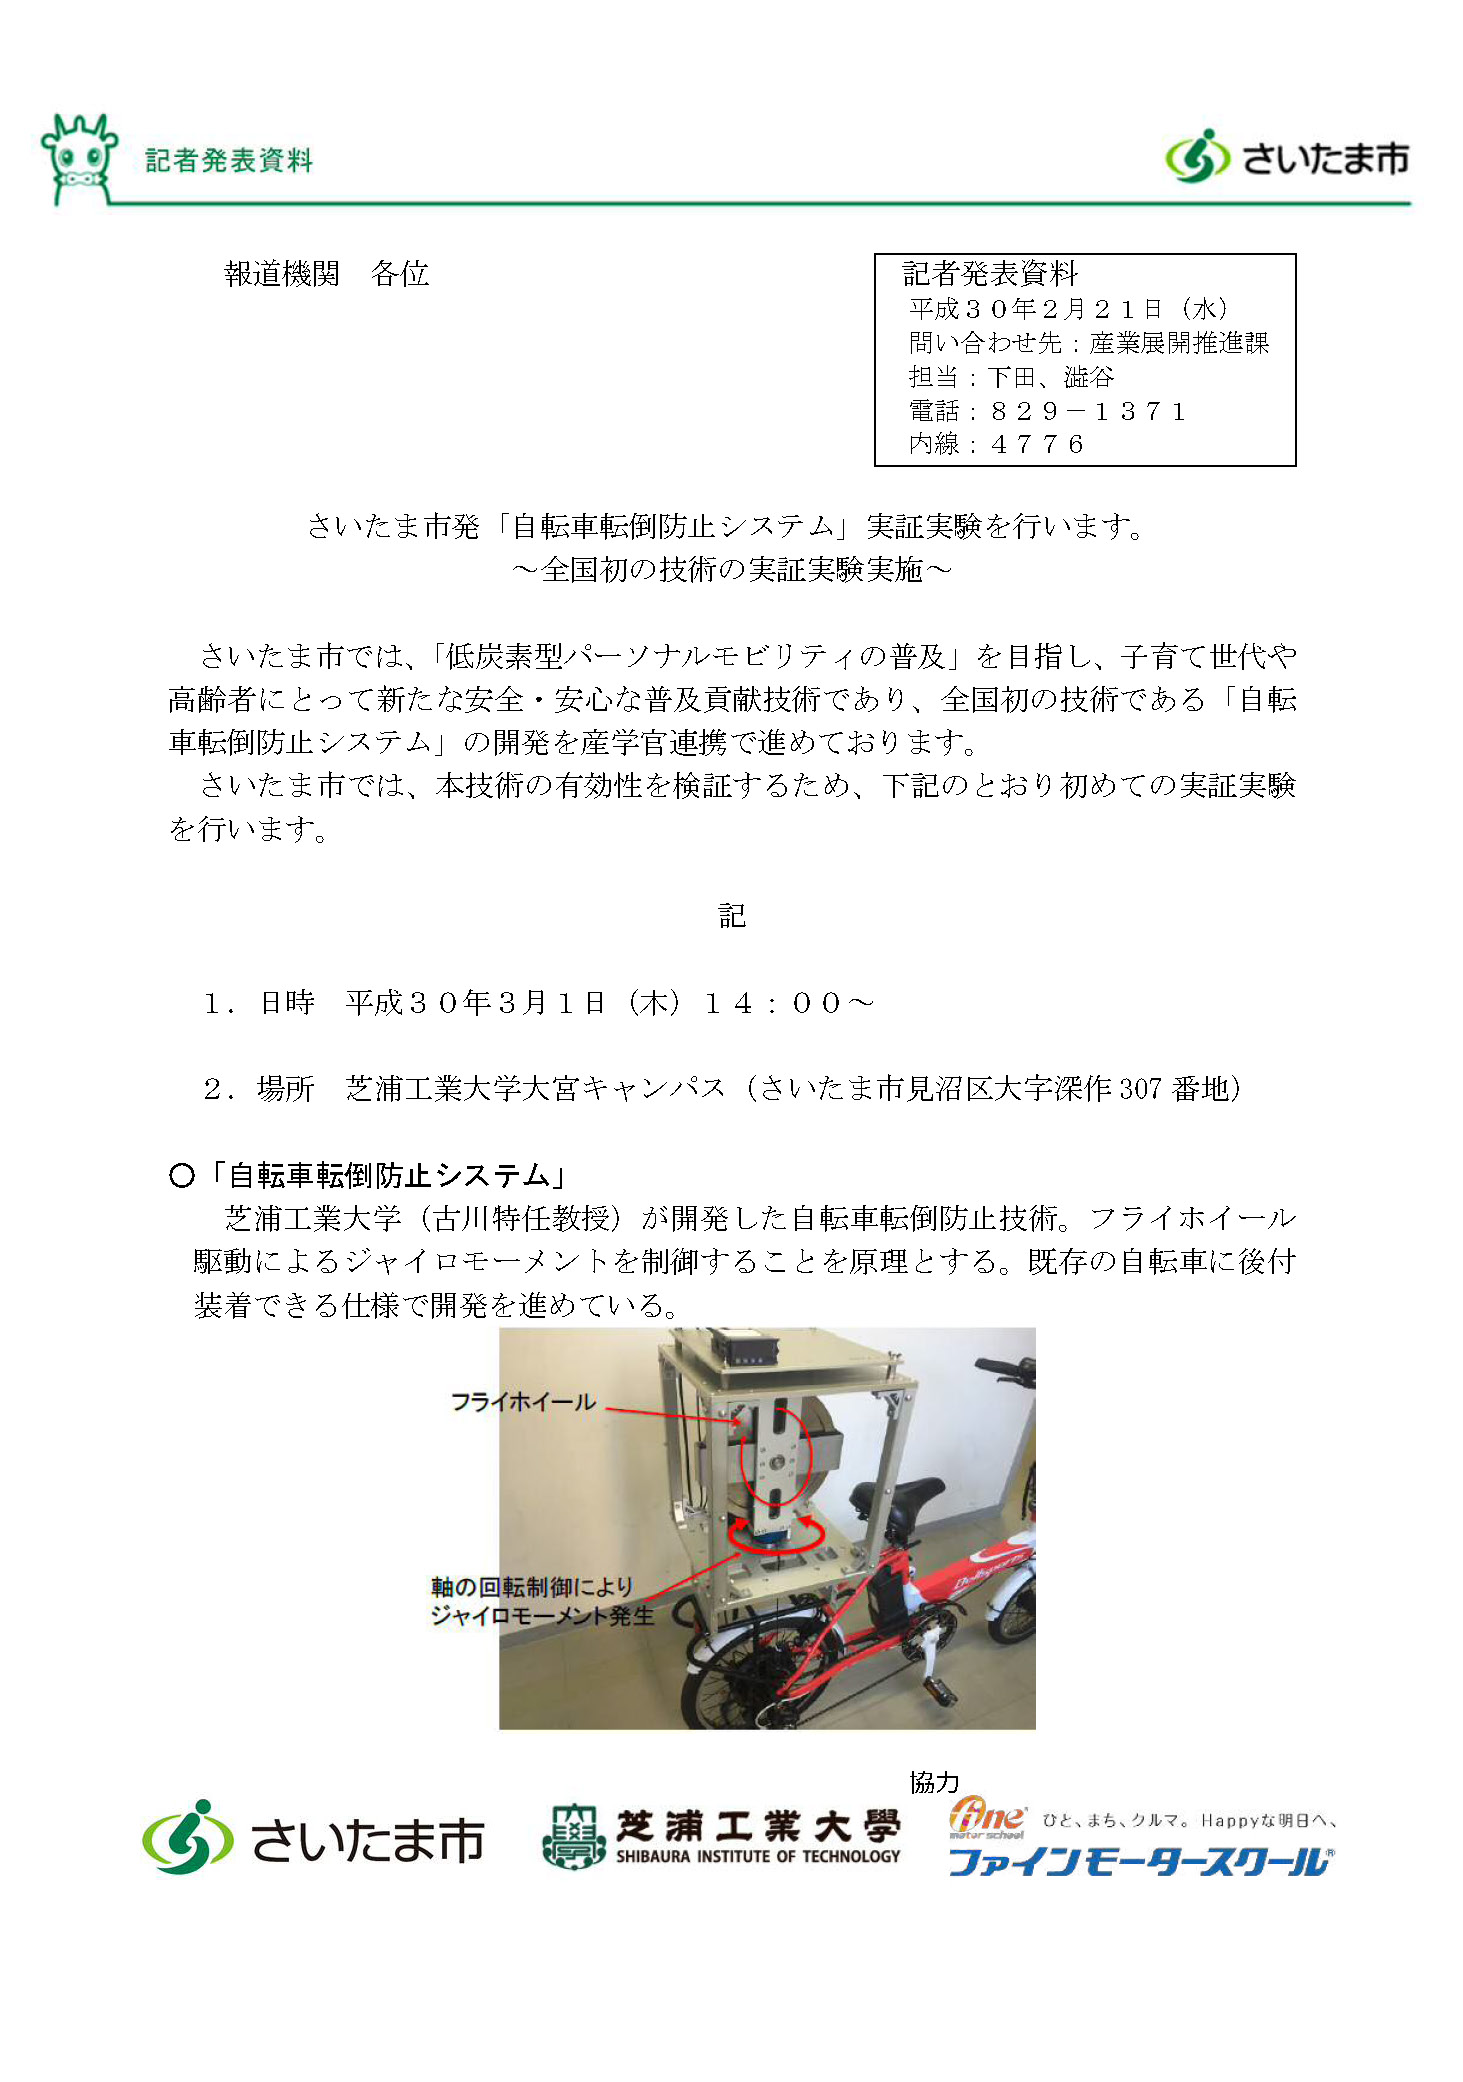 (平成30年2月21日記者発表)自転車転倒防止システム実証実験